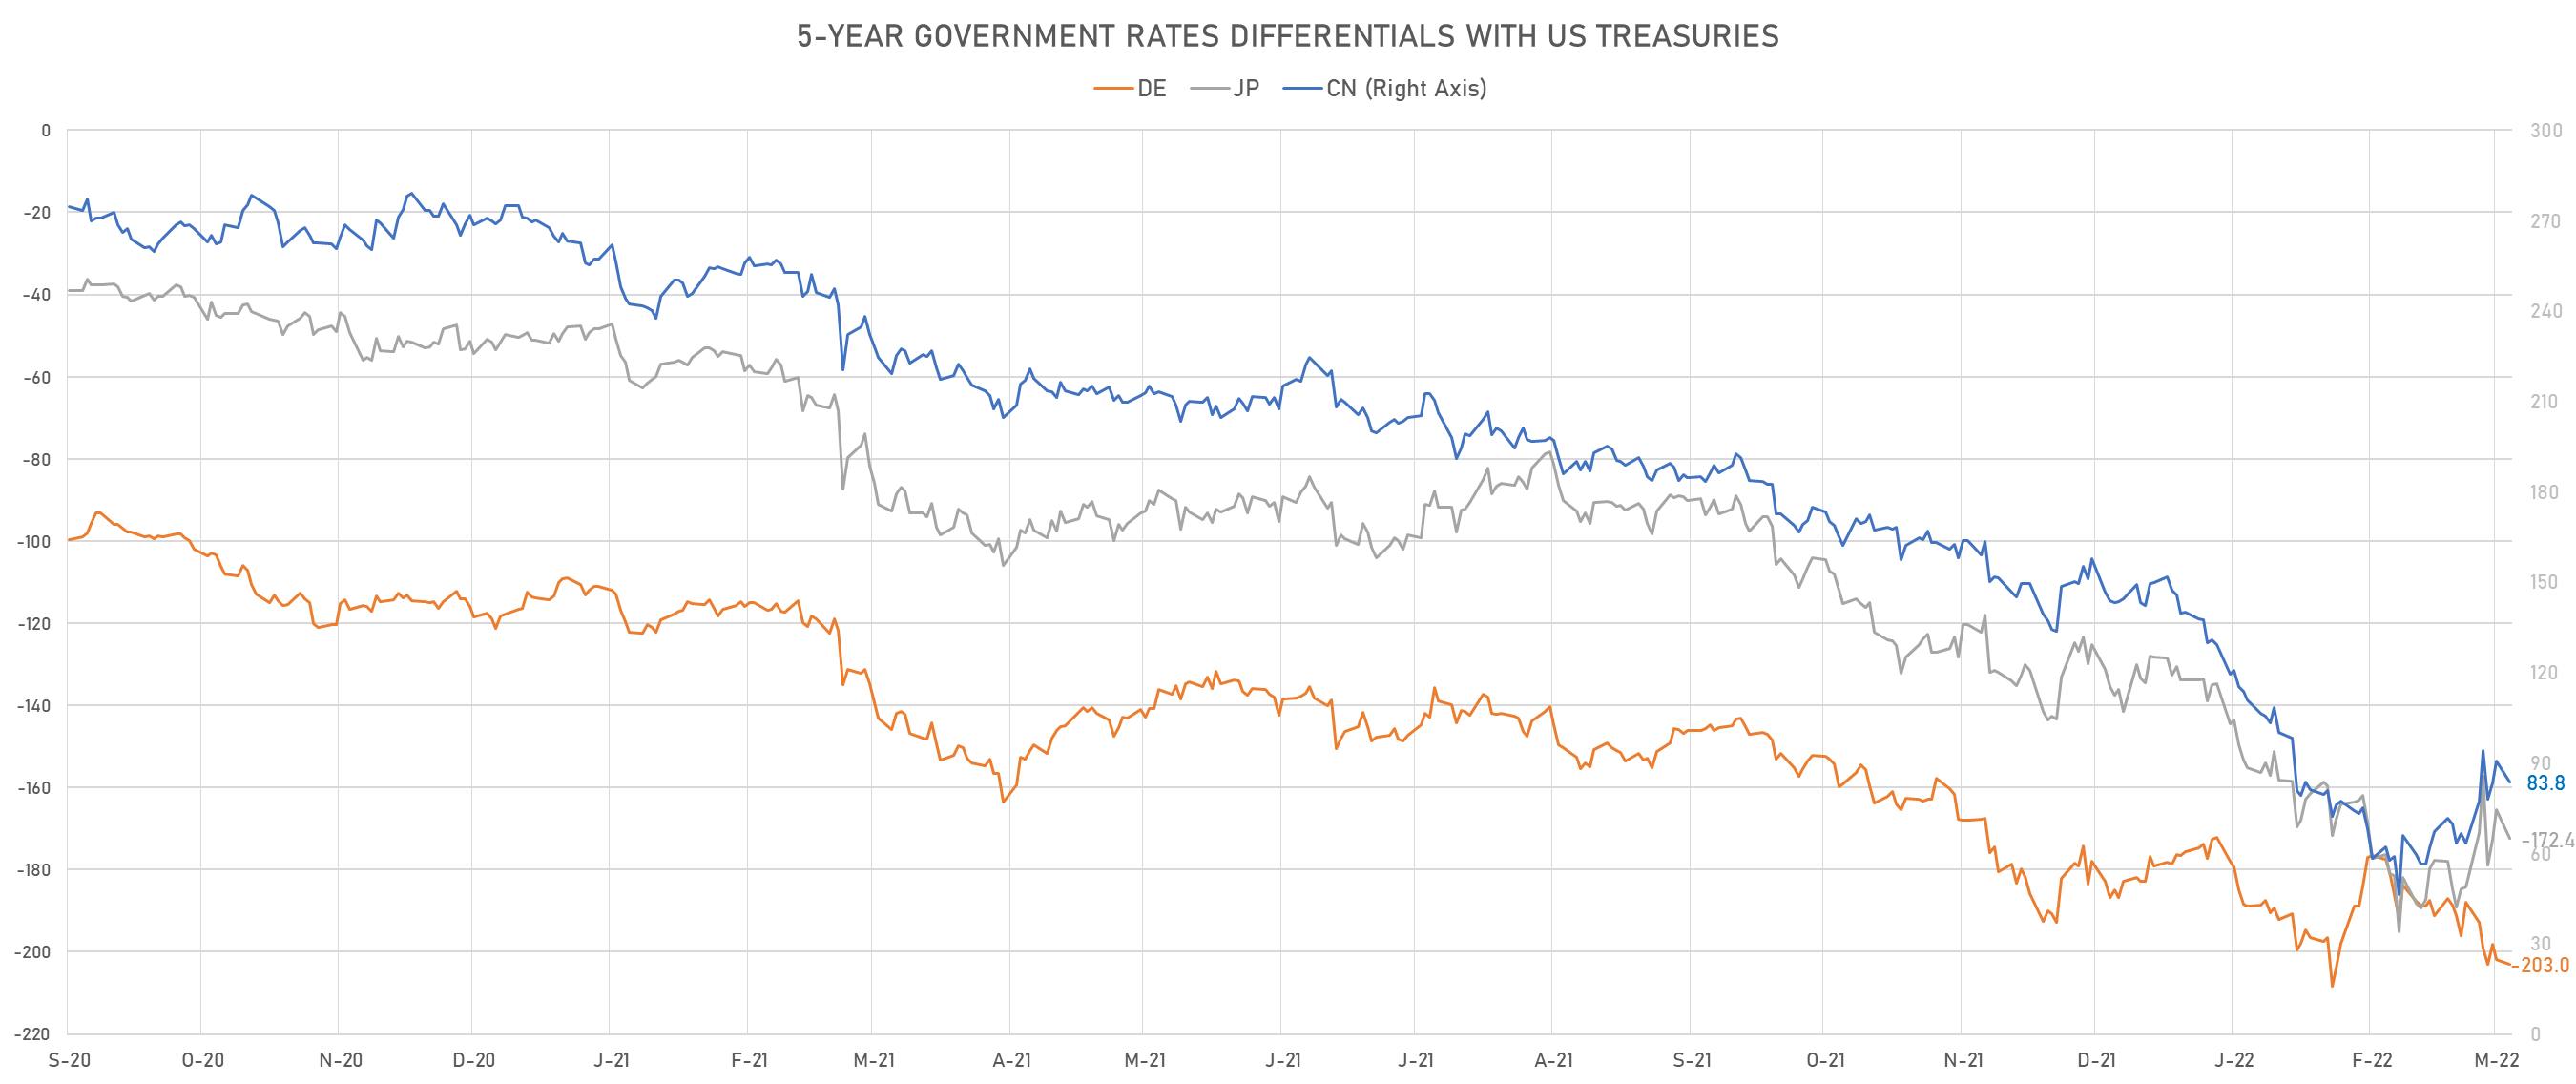 US CN DE JP 5Y Rates Differentials | Sources: phipost.com, Refinitiv data